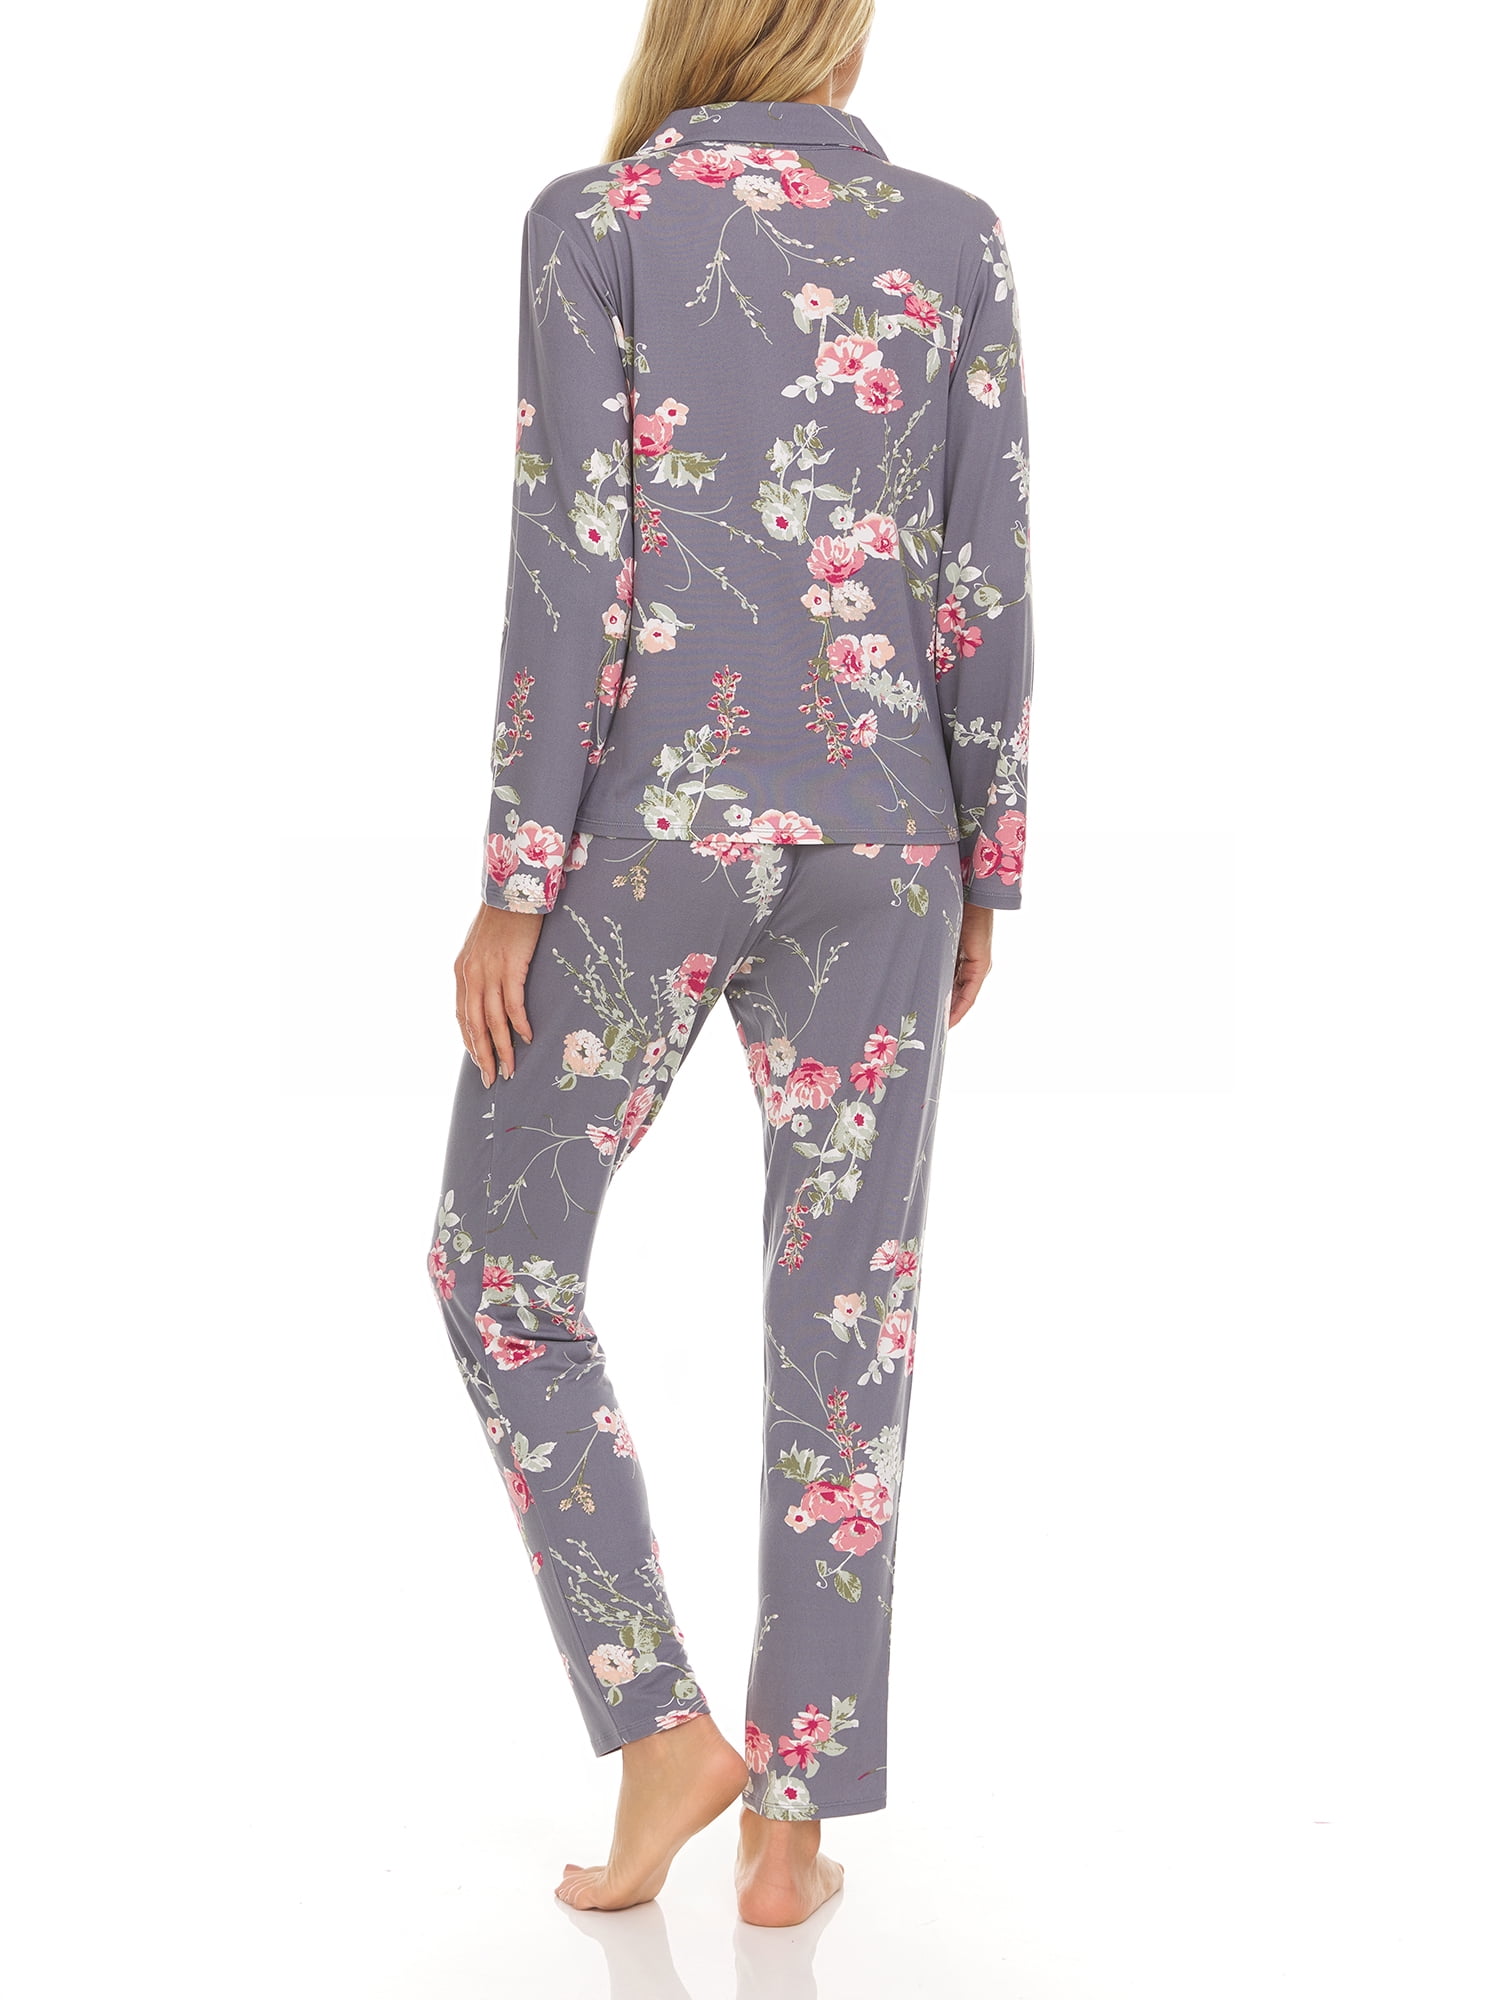 OCCIENTEC Pajama Set for Women Super Soft Long Sleeve Sleepwear Women’s Button Down Nightwear Loungewear PJ Set 